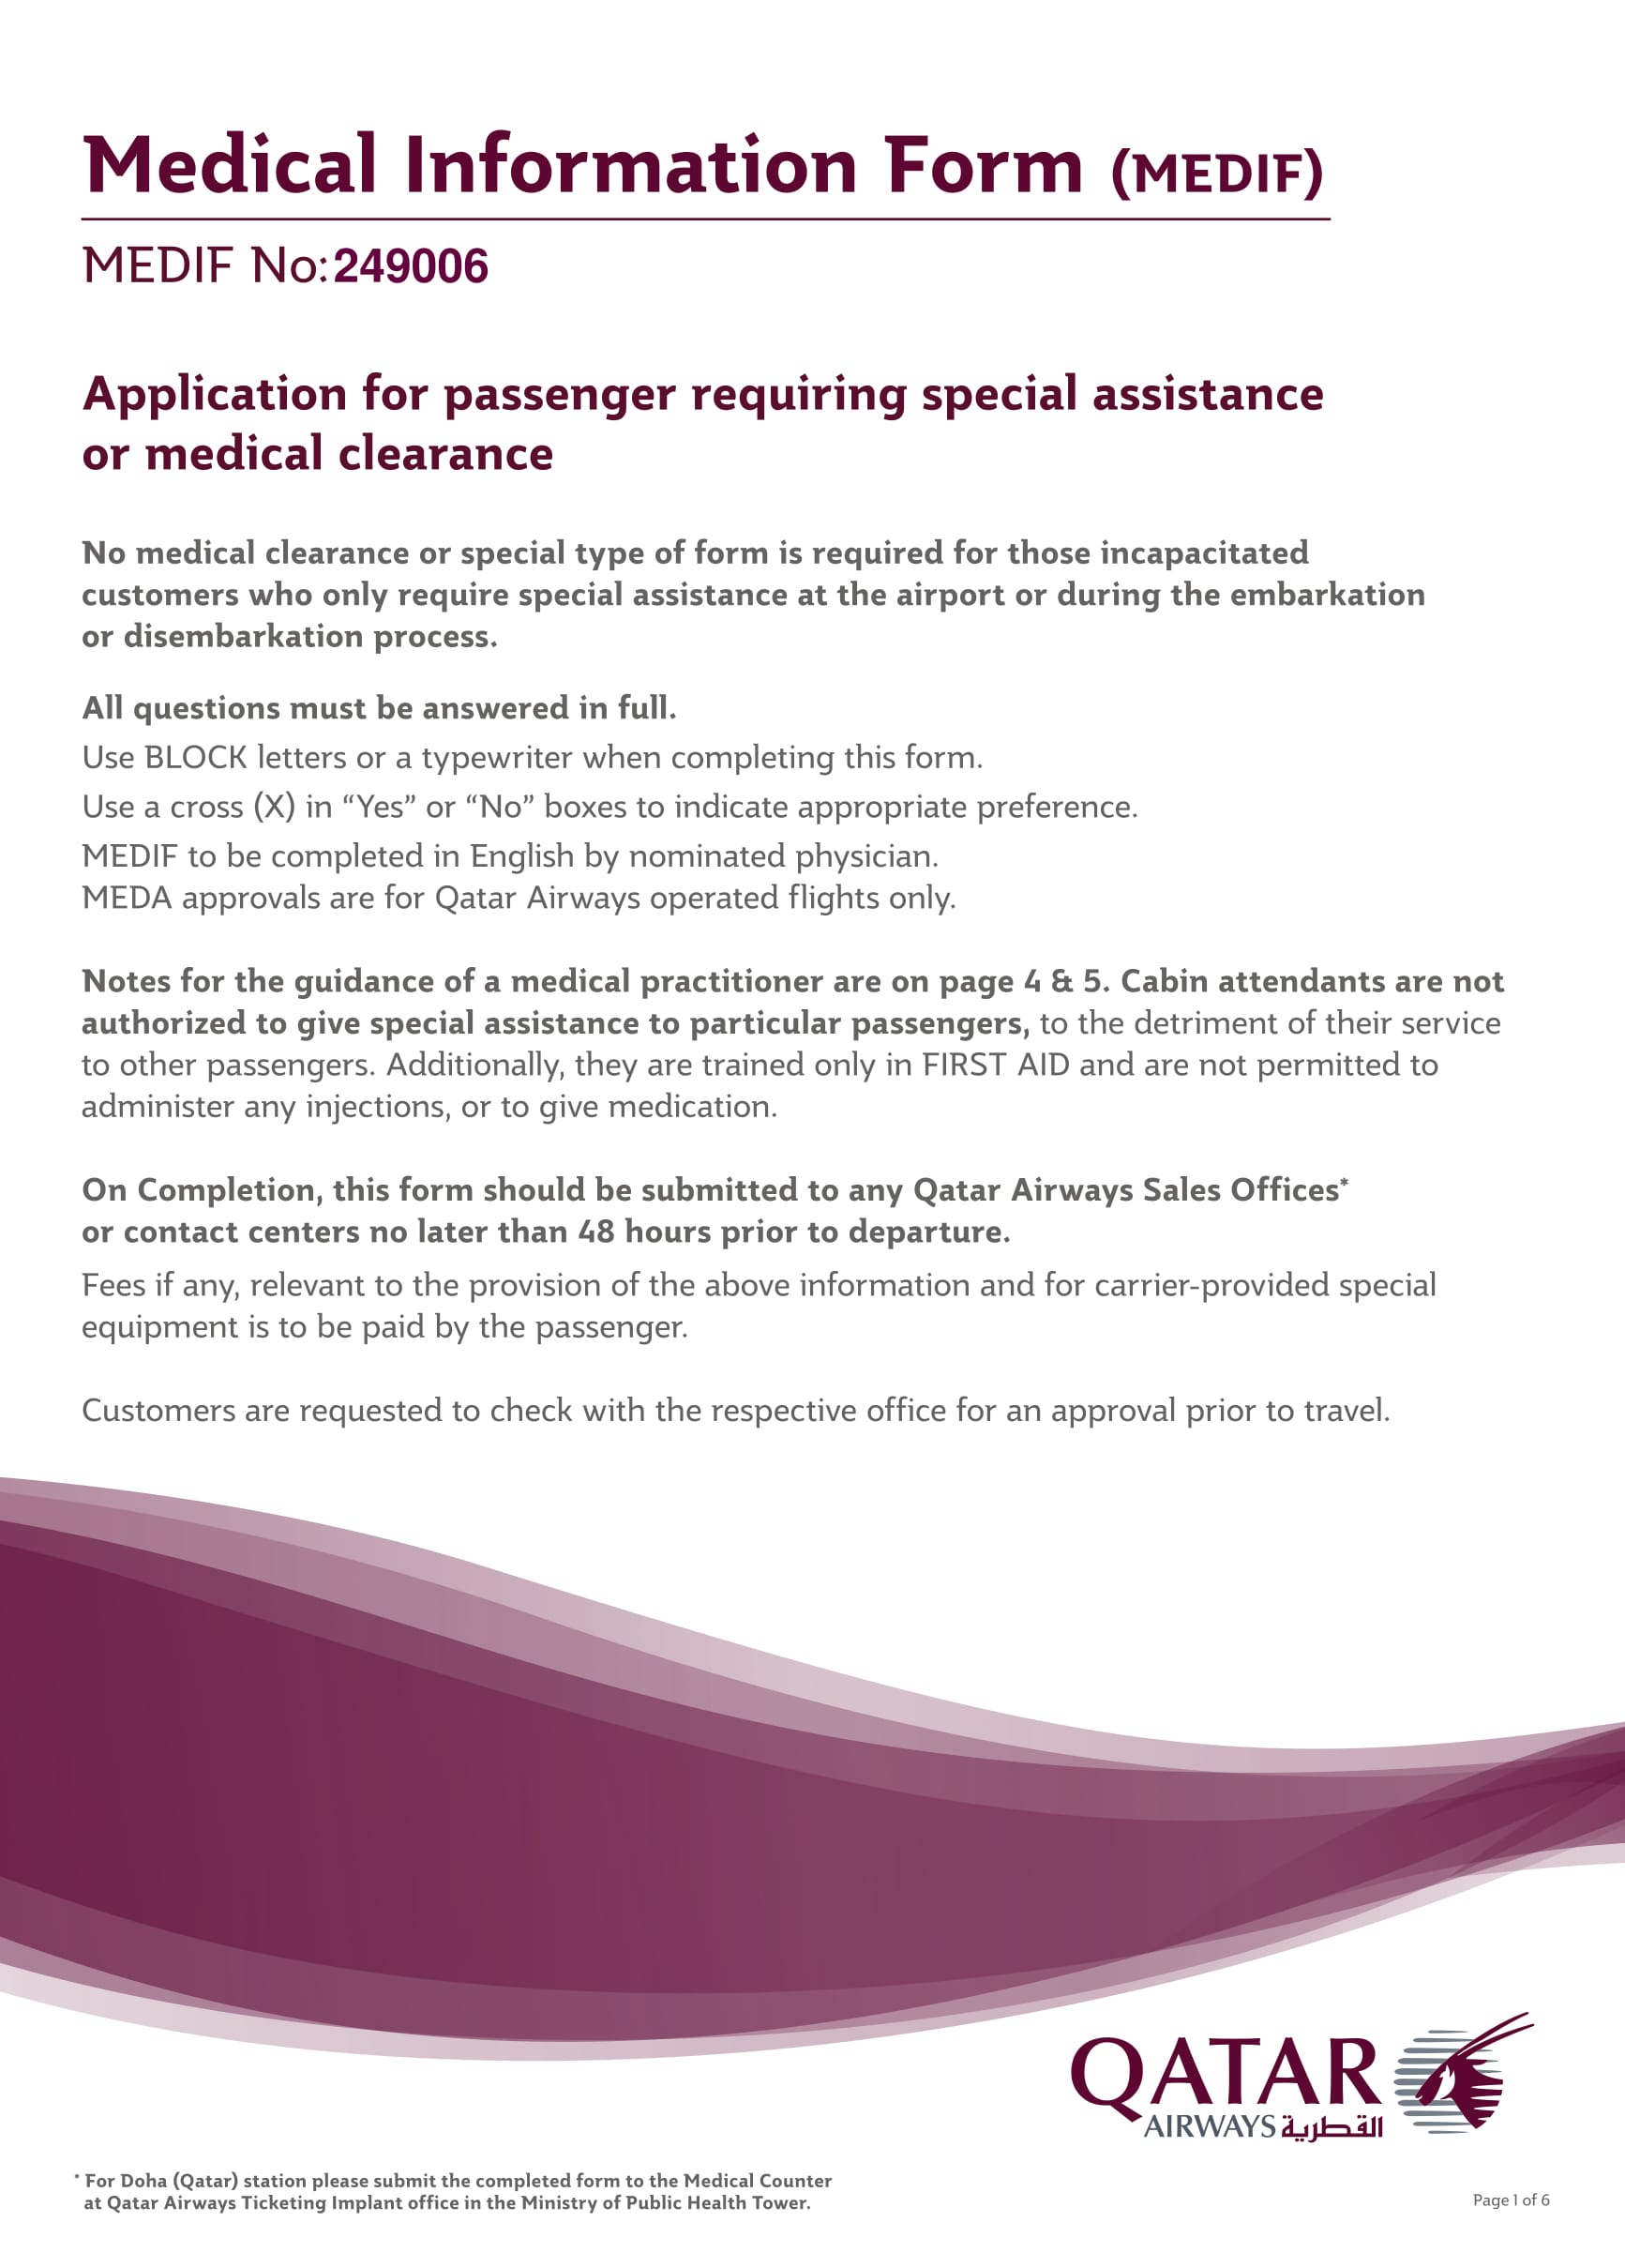 passenger medical information form 1